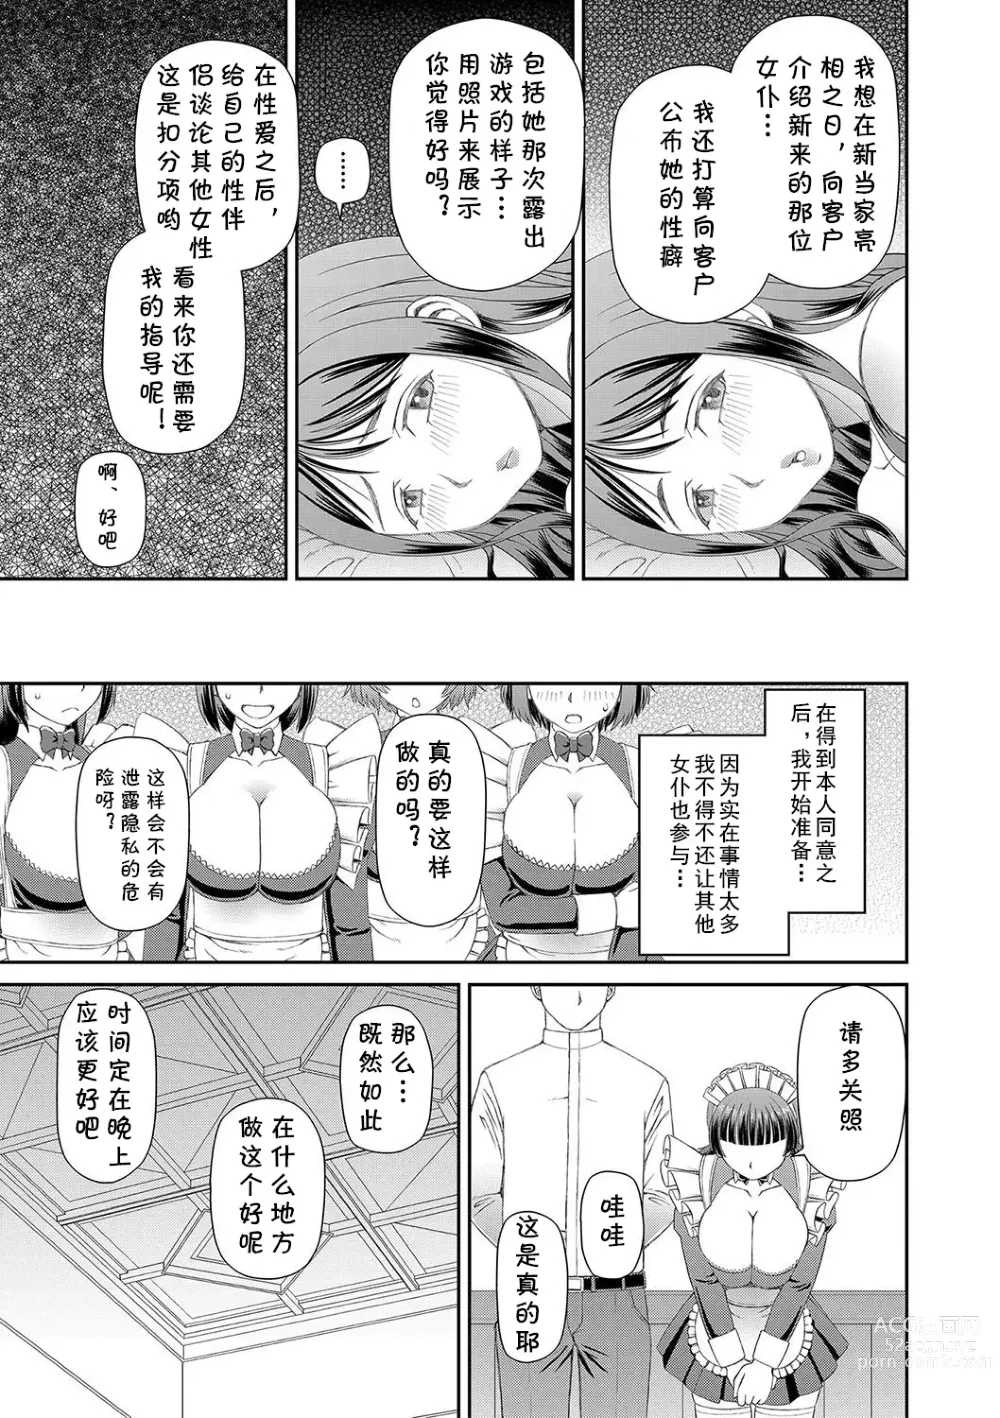 Page 51 of manga Ano Hito ni...